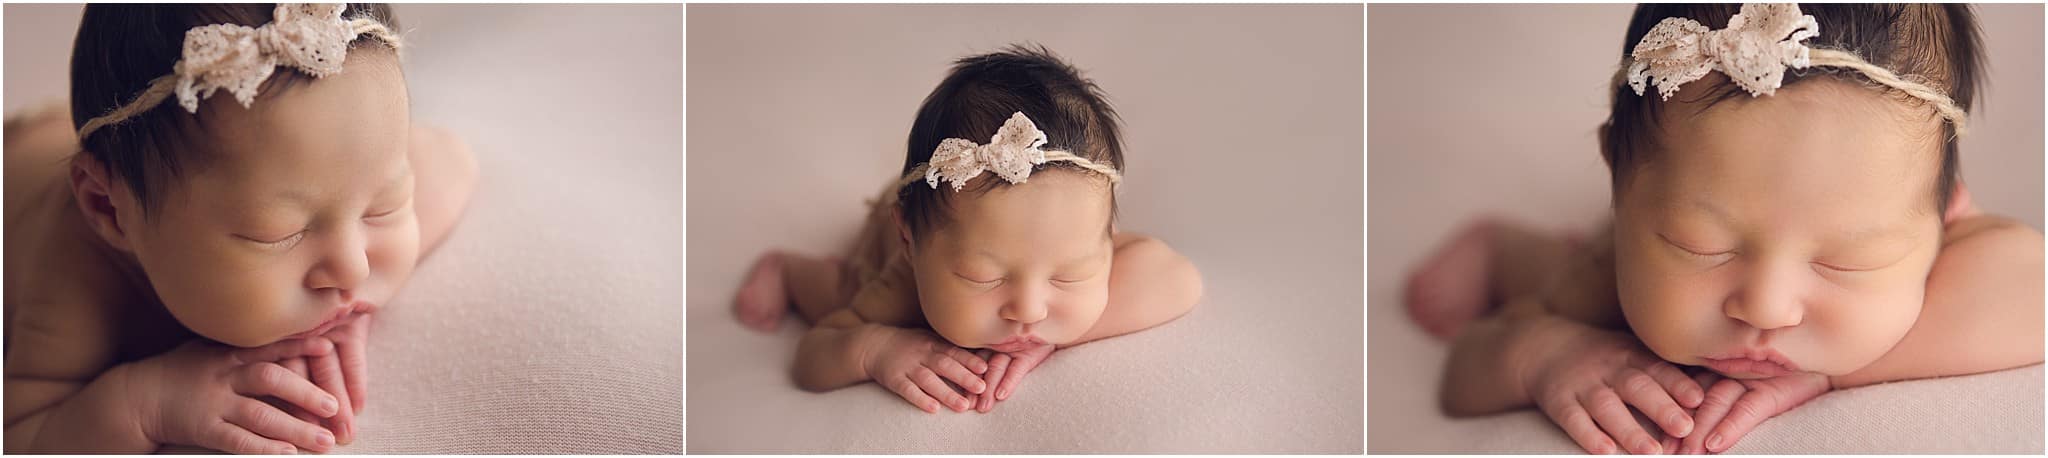 nwa newborn photographers | erica kirby photography best newborn photographer pricing